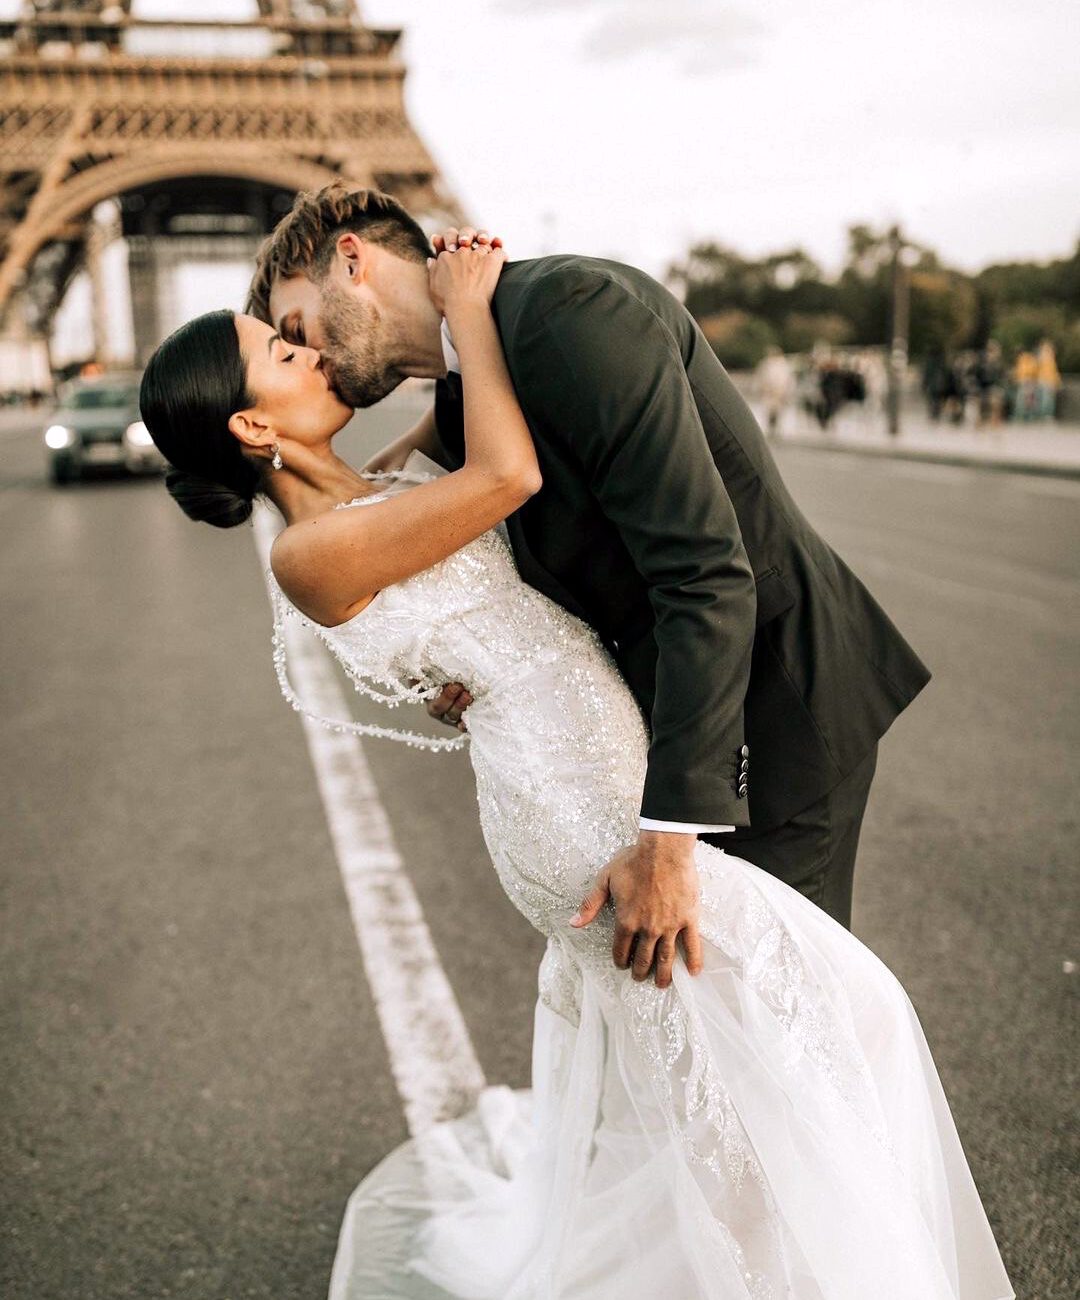 Brautpaar küsst sich vor Eiffelturm in Paris